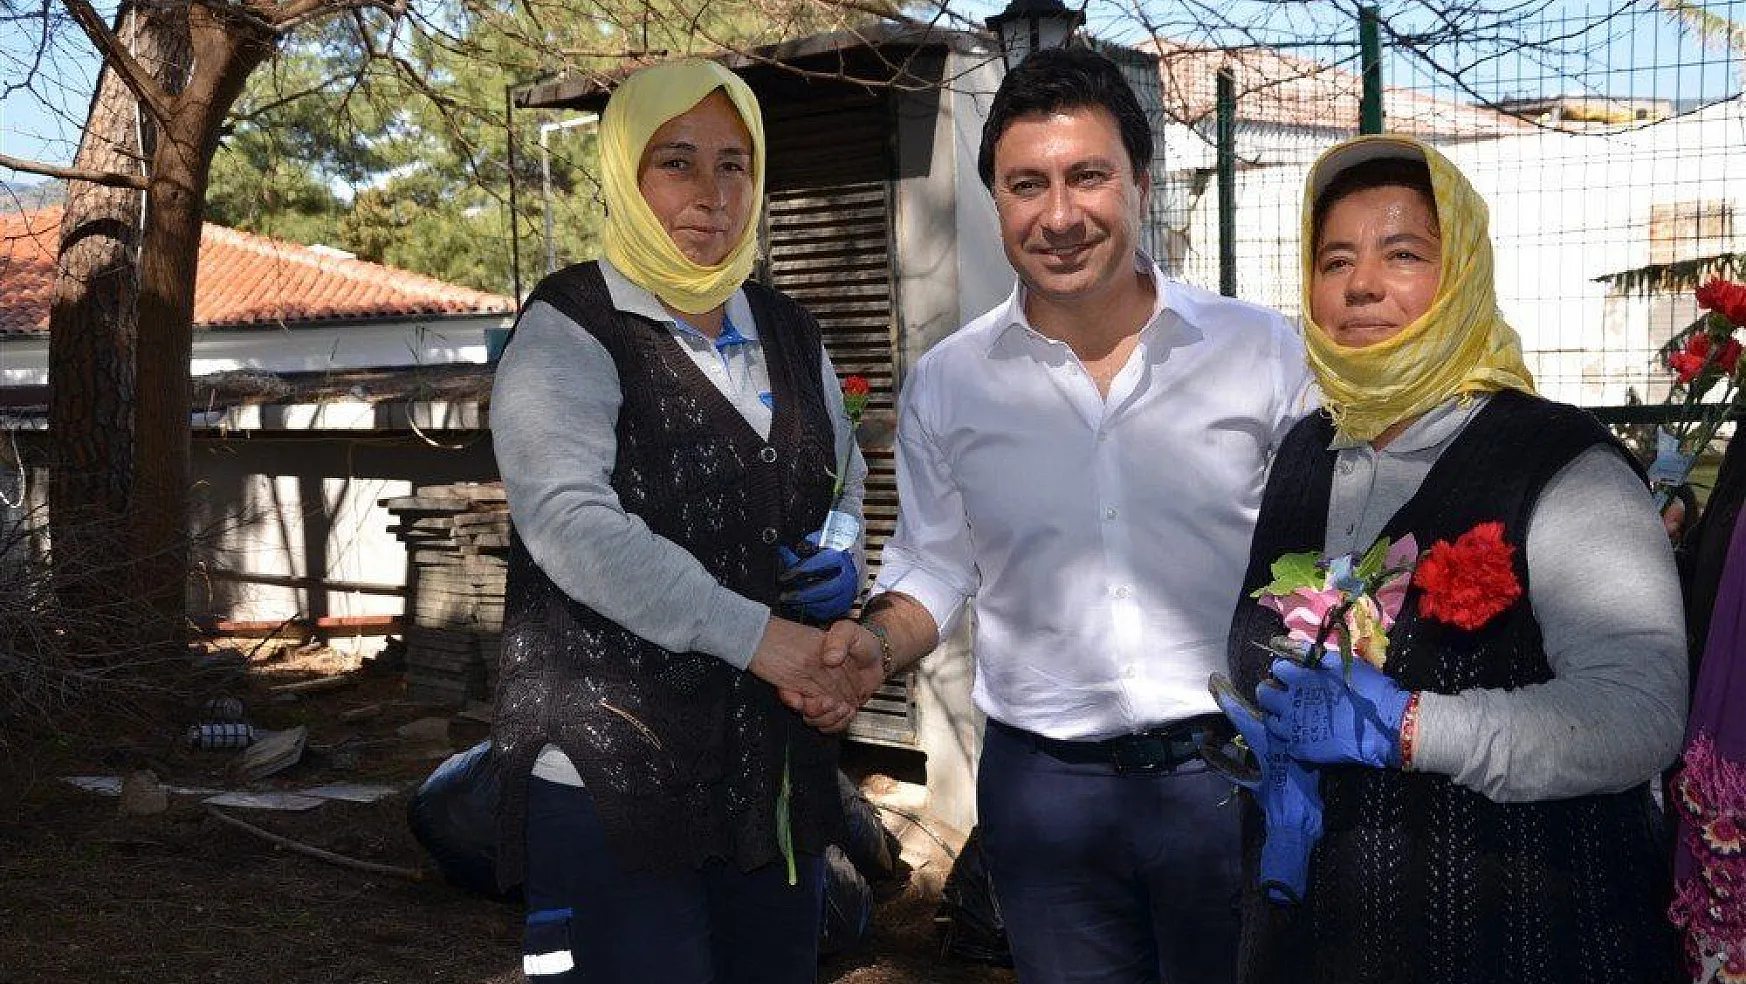 CHP adayı Aras kadınlara söz verdi, imza attı